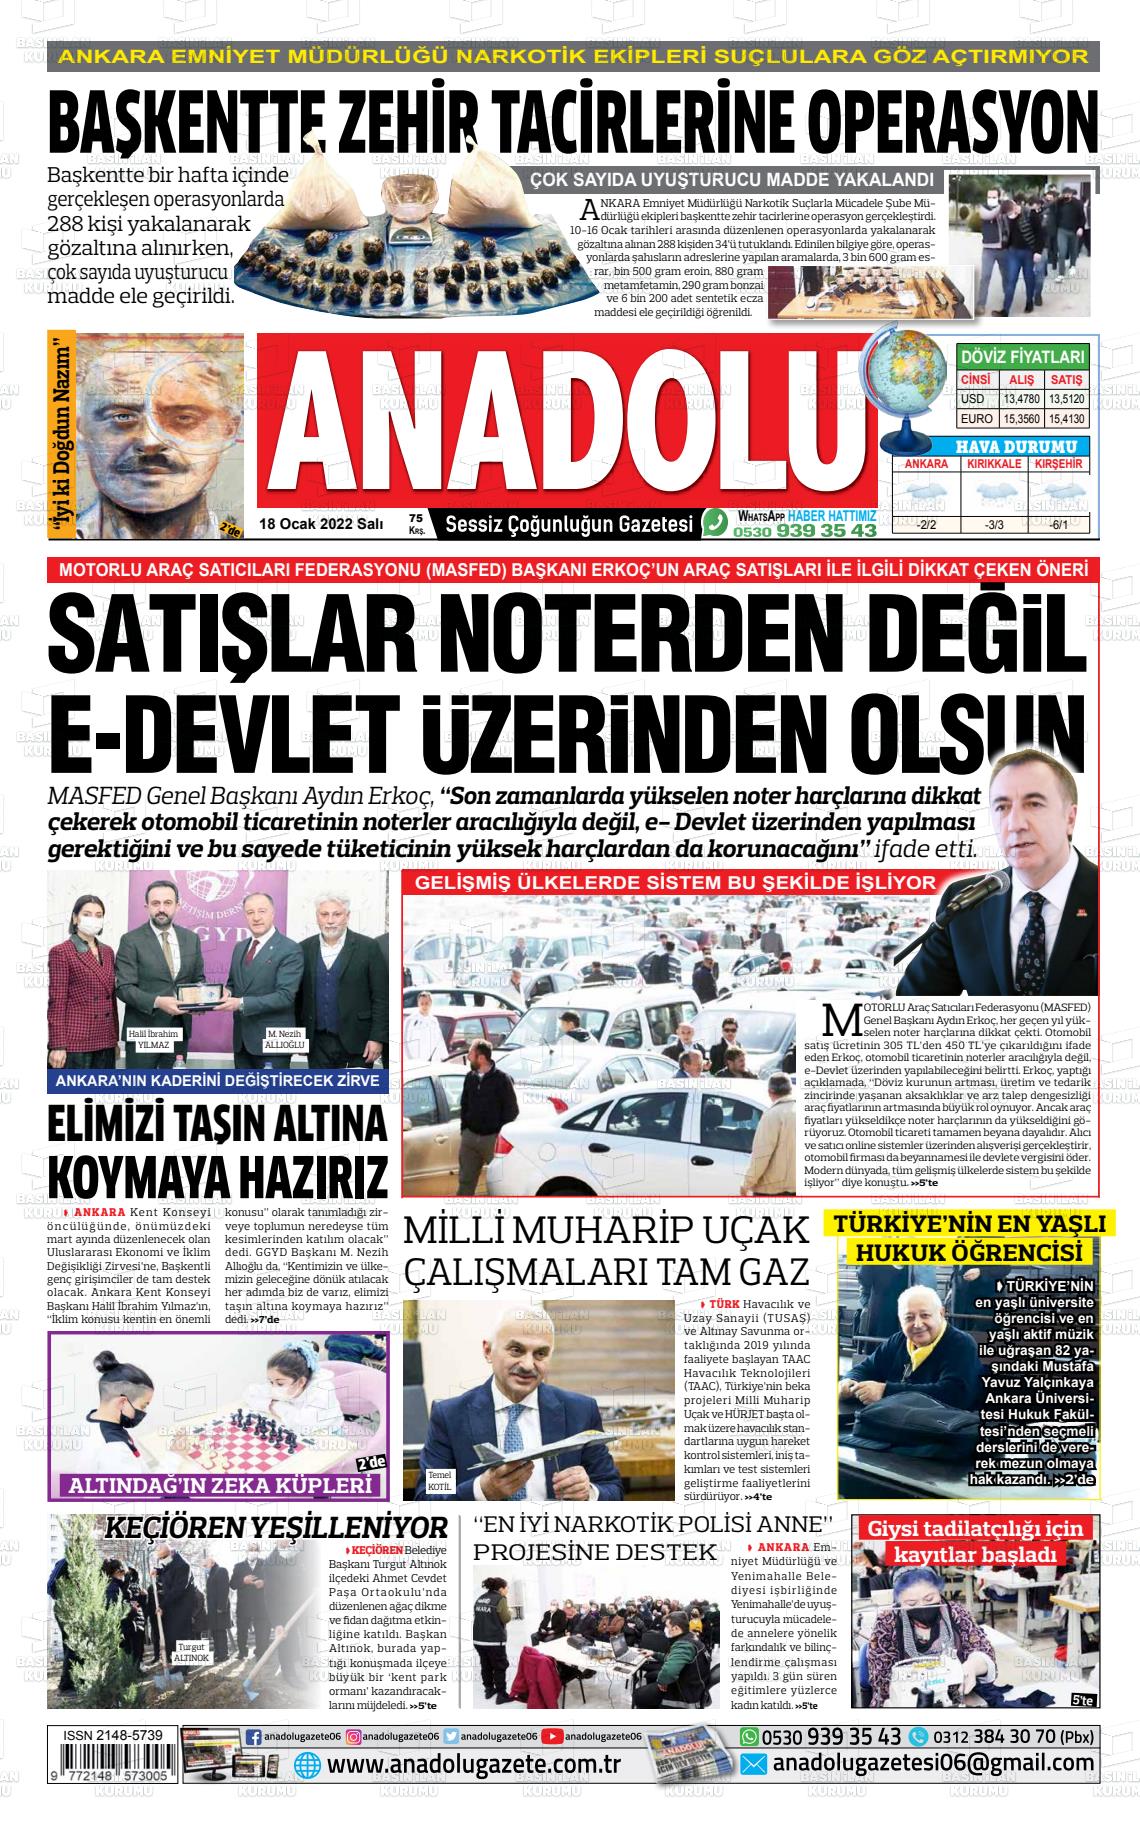 18 Ocak 2022 Ankara Anadolu Gazete Manşeti